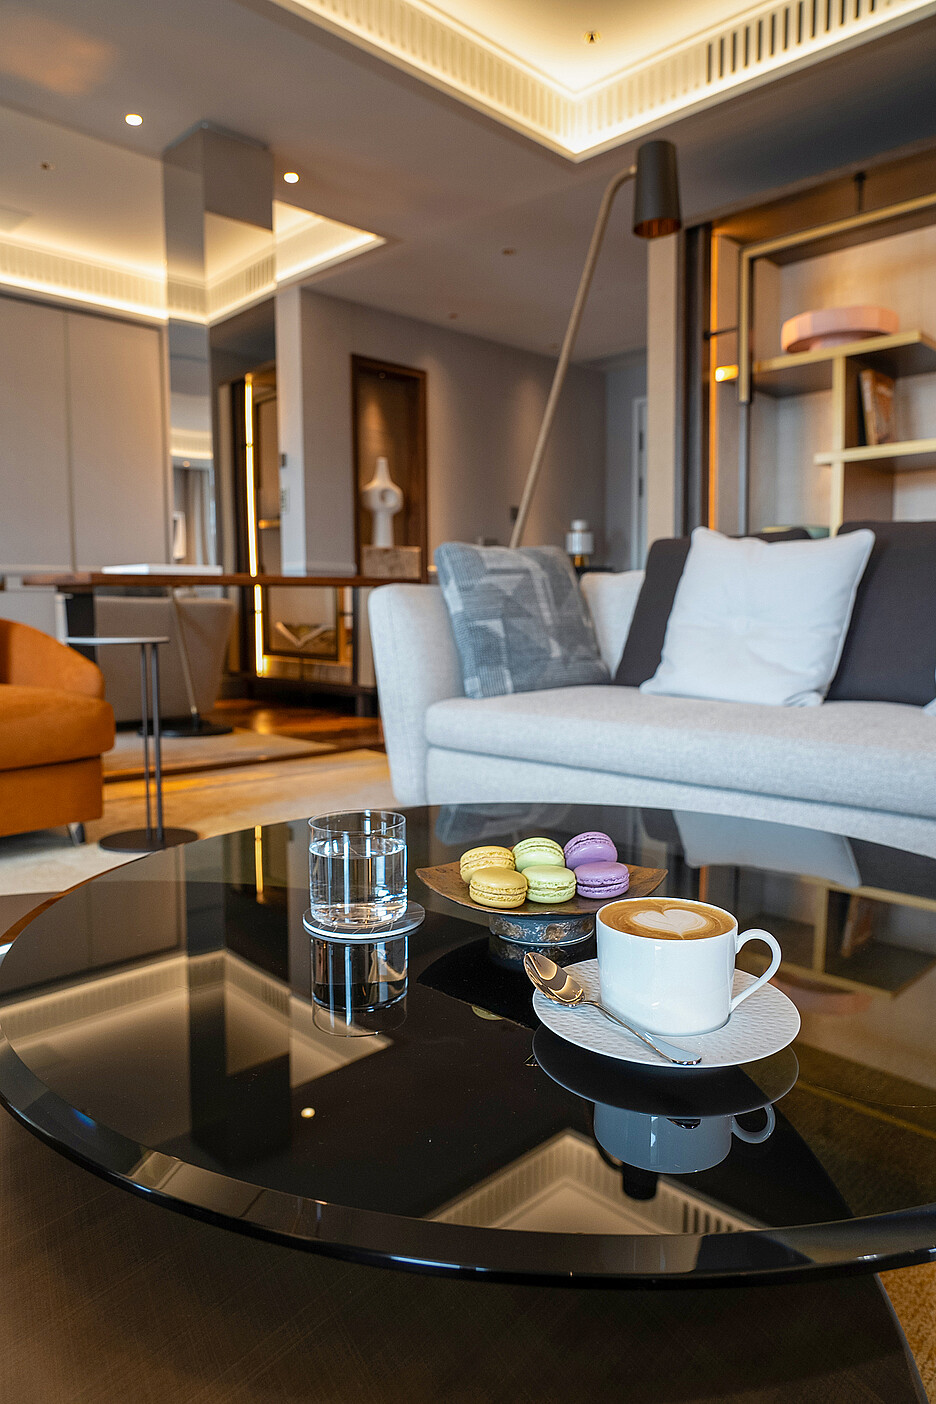 Kaffeegenuss in Zimmern und Suiten – das gehört zum legendären Service im Mandarin Oriental Savoy dazu.